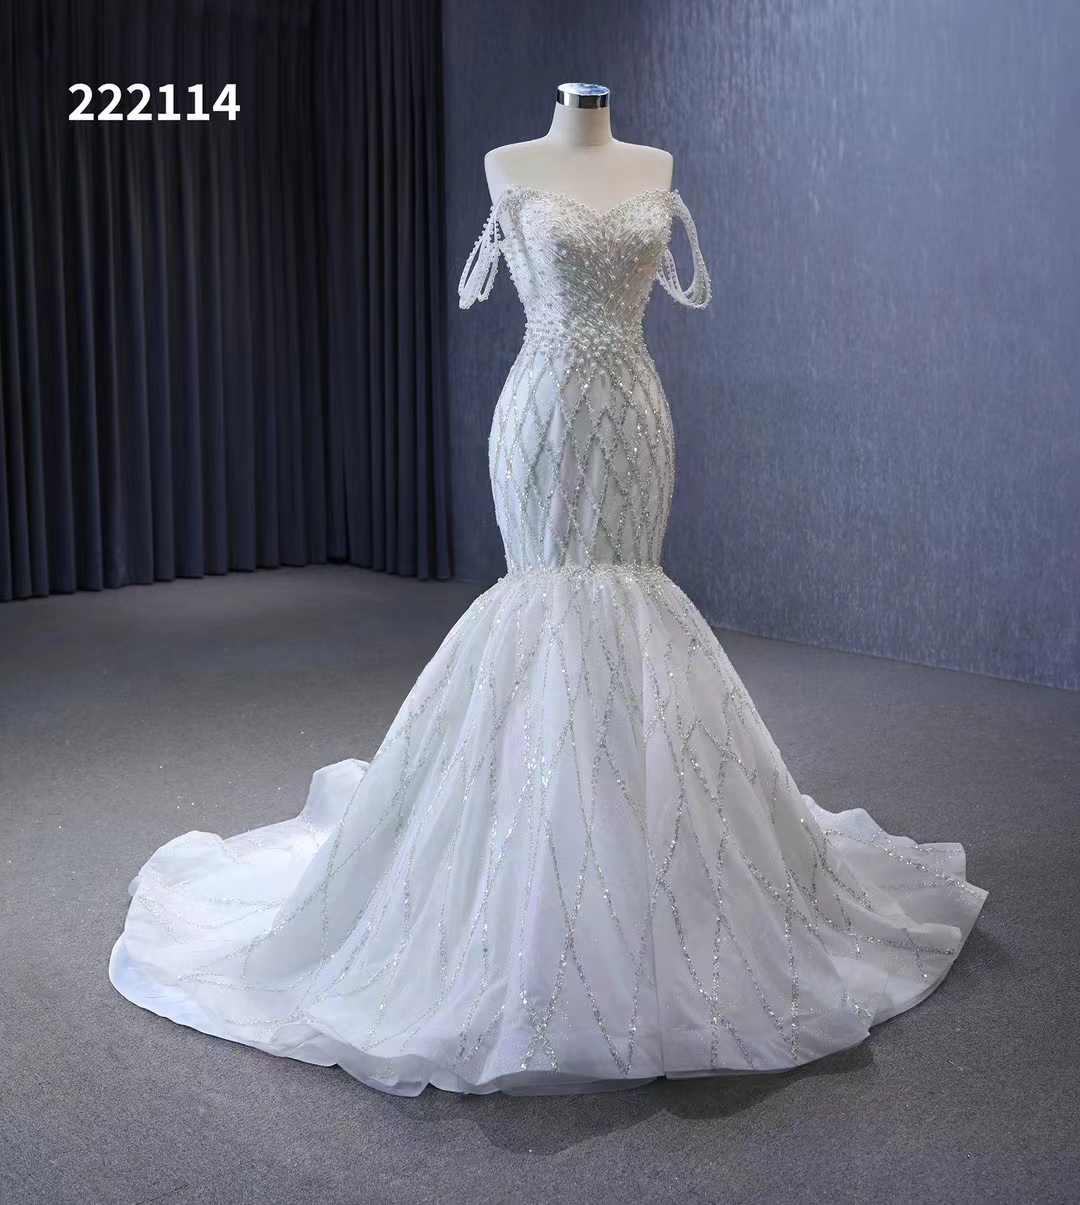 Mermaid Bridal Gown Wedding Dress Modern Off Shoulder SM222114